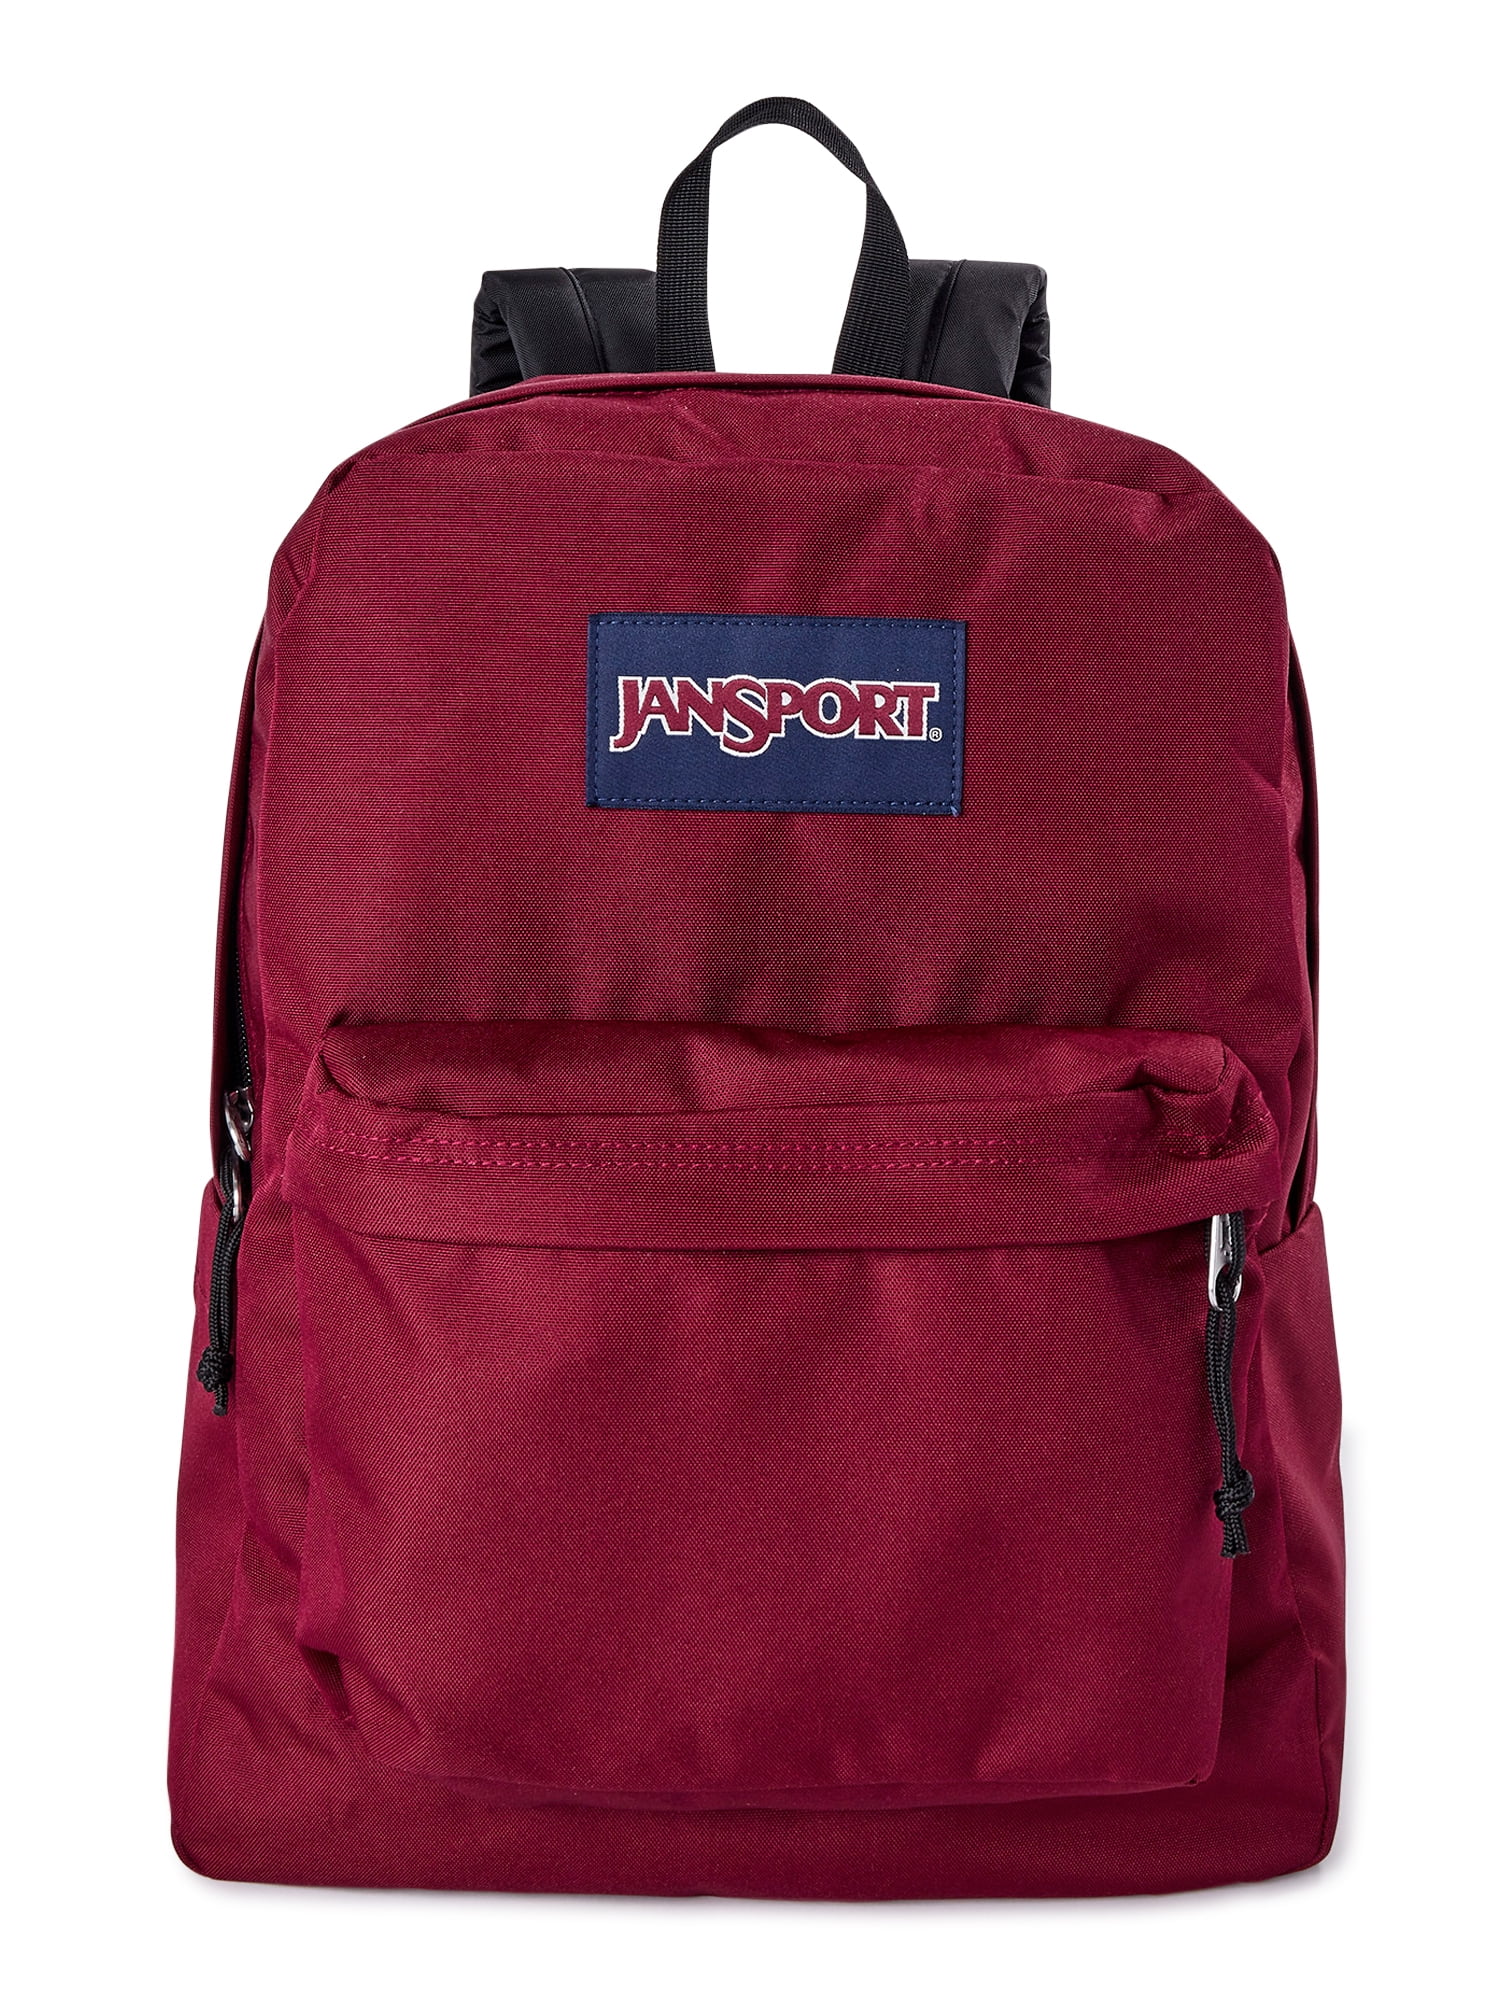 Jansport Superbreak Backpack T501008 Black MSRP $55 